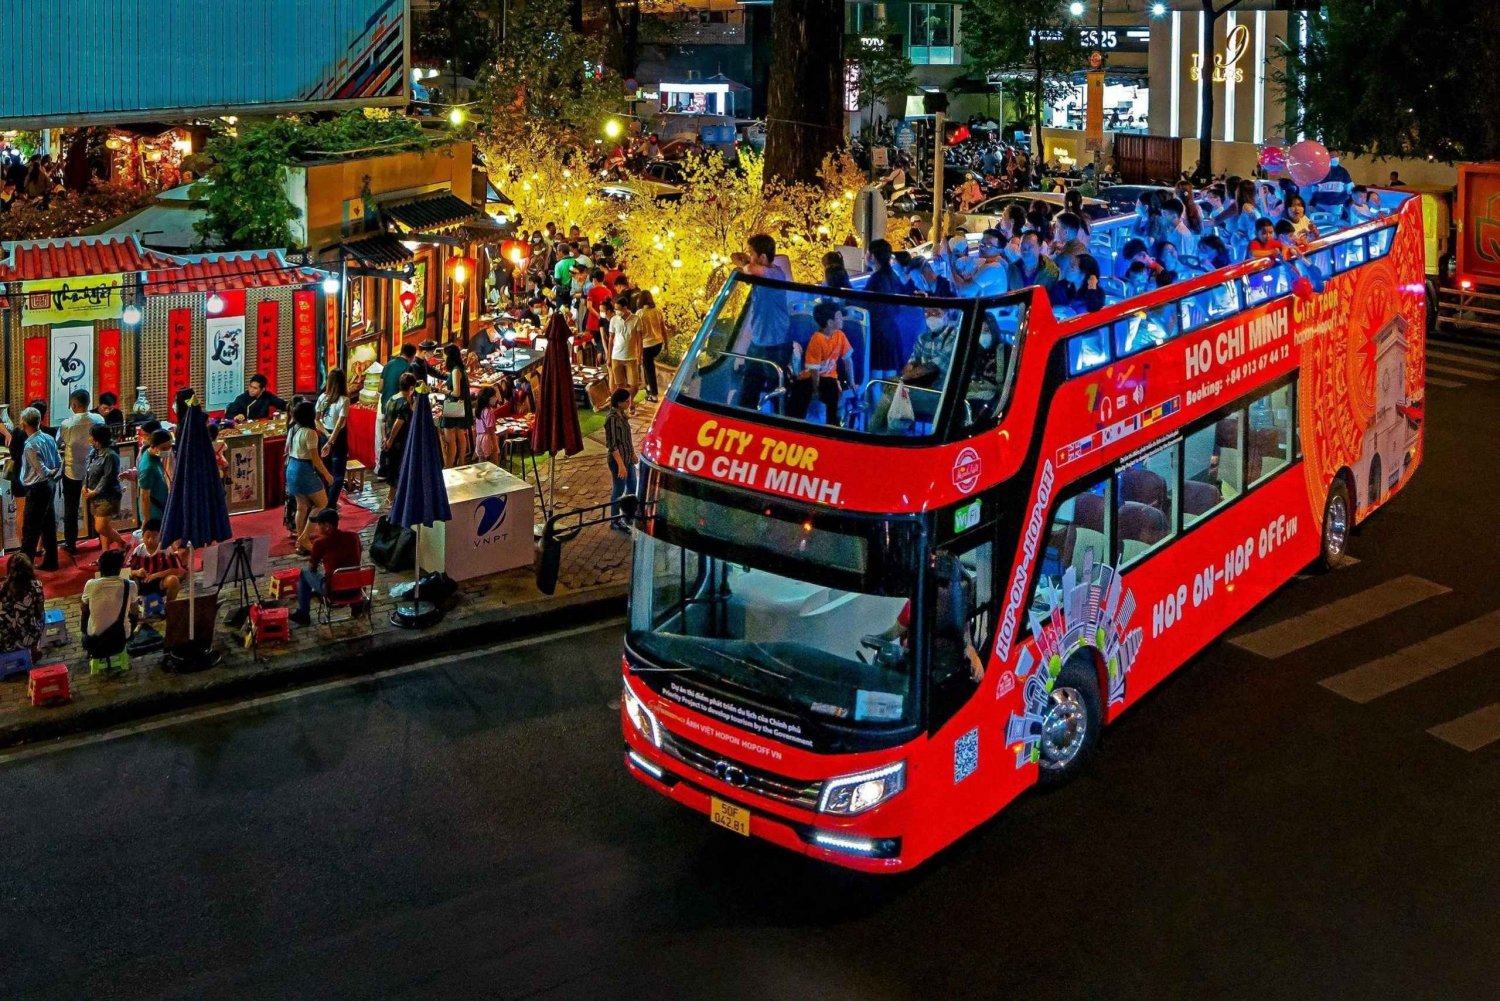 HoChiMinh City: 1Rundtur med buss - middag på cruise med AnhViet